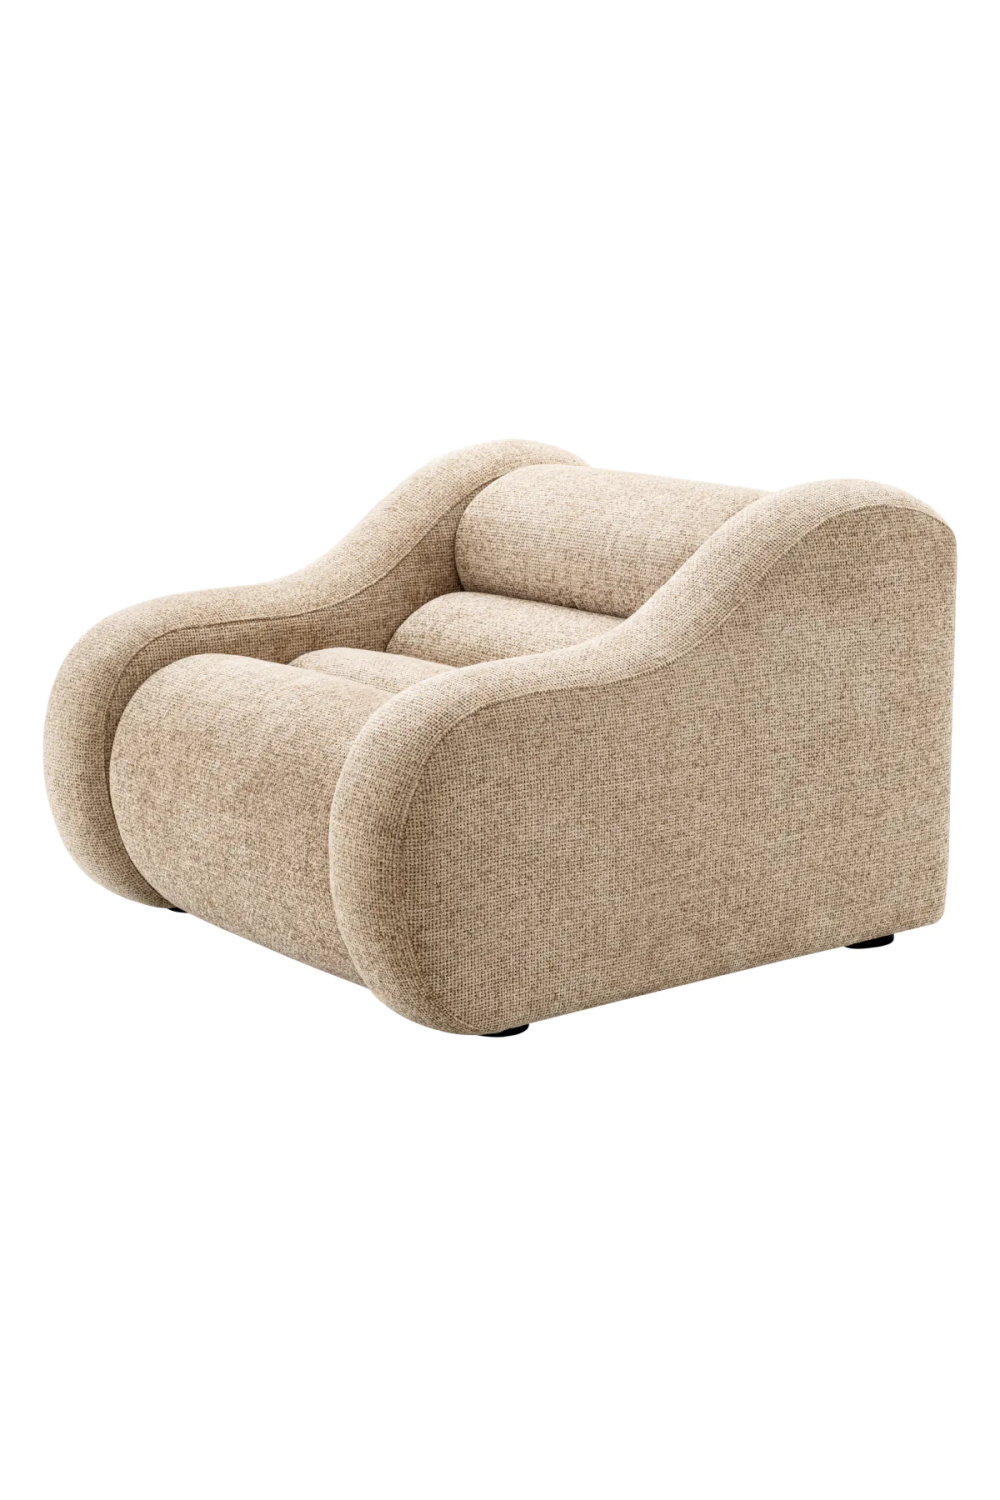 Beige Modern Lounge Chair | Eichholtz Carbone | Oroa.com